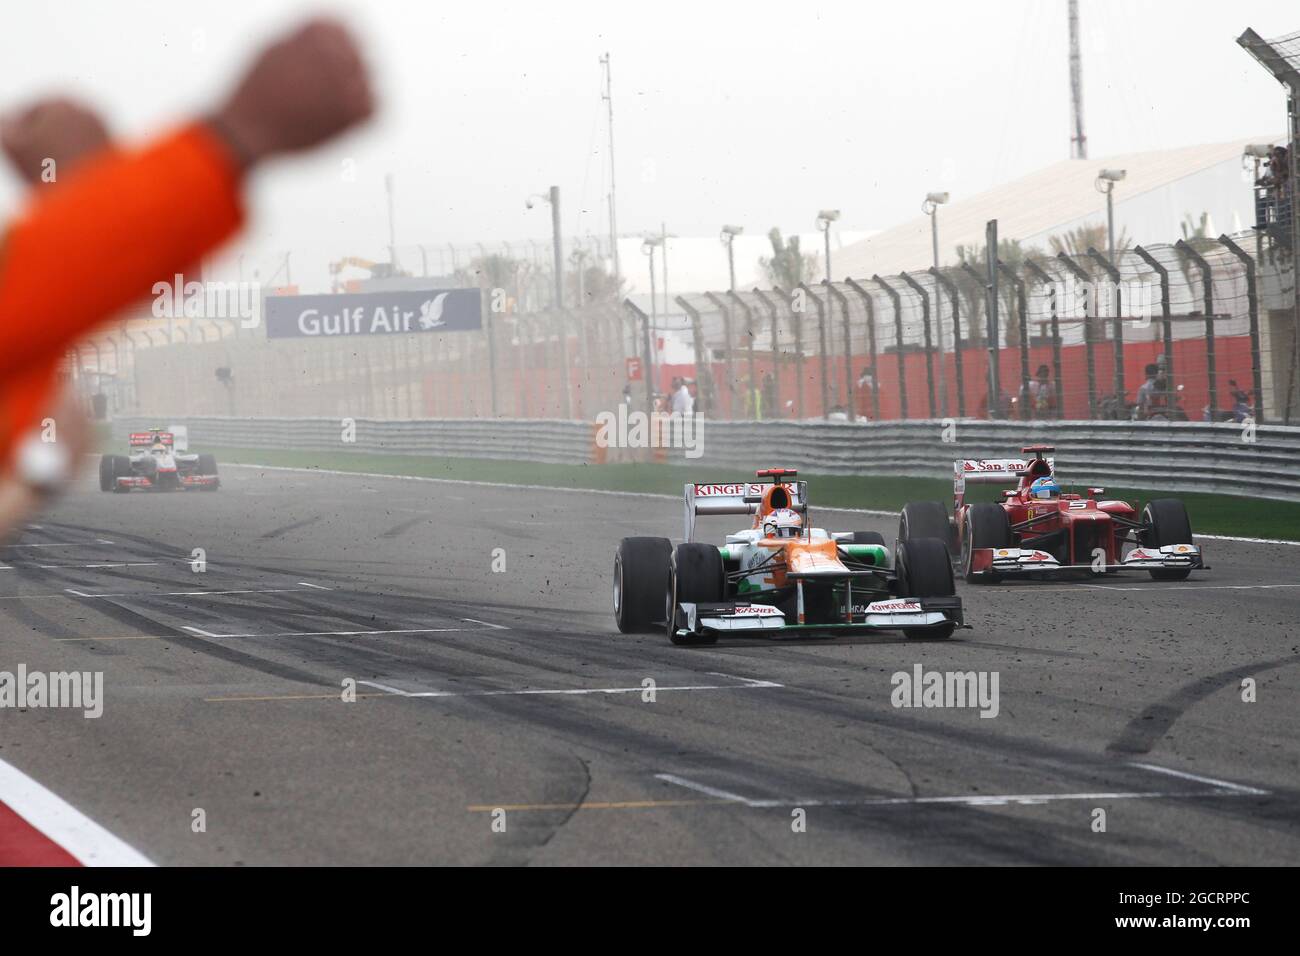 Paul di Resta (GBR) Sahara Force India VJM05 wird Sechster vor Fernando Alonso (ESP) Ferrari F2012 und feiert am Ende des Rennens an seinem Team vorbei. Großer Preis von Bahrain, Sonntag, 22. April 2012. Sakhir, Bahrain. Stockfoto